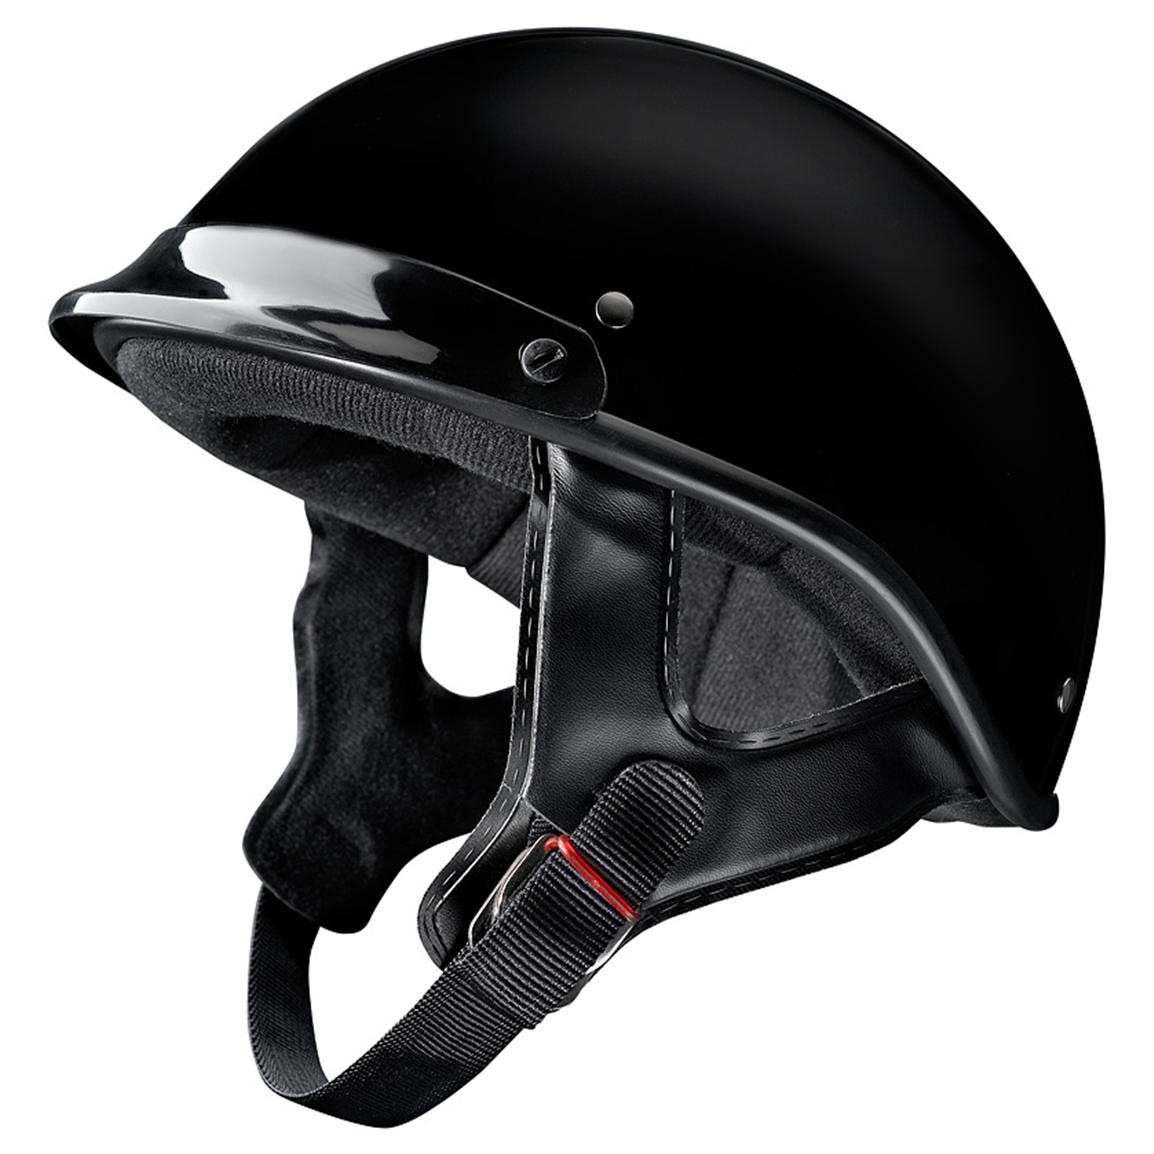 Raider® Trooper Motorcycle Helmet - 216794, Helmets & Goggles at Sportsman's Guide